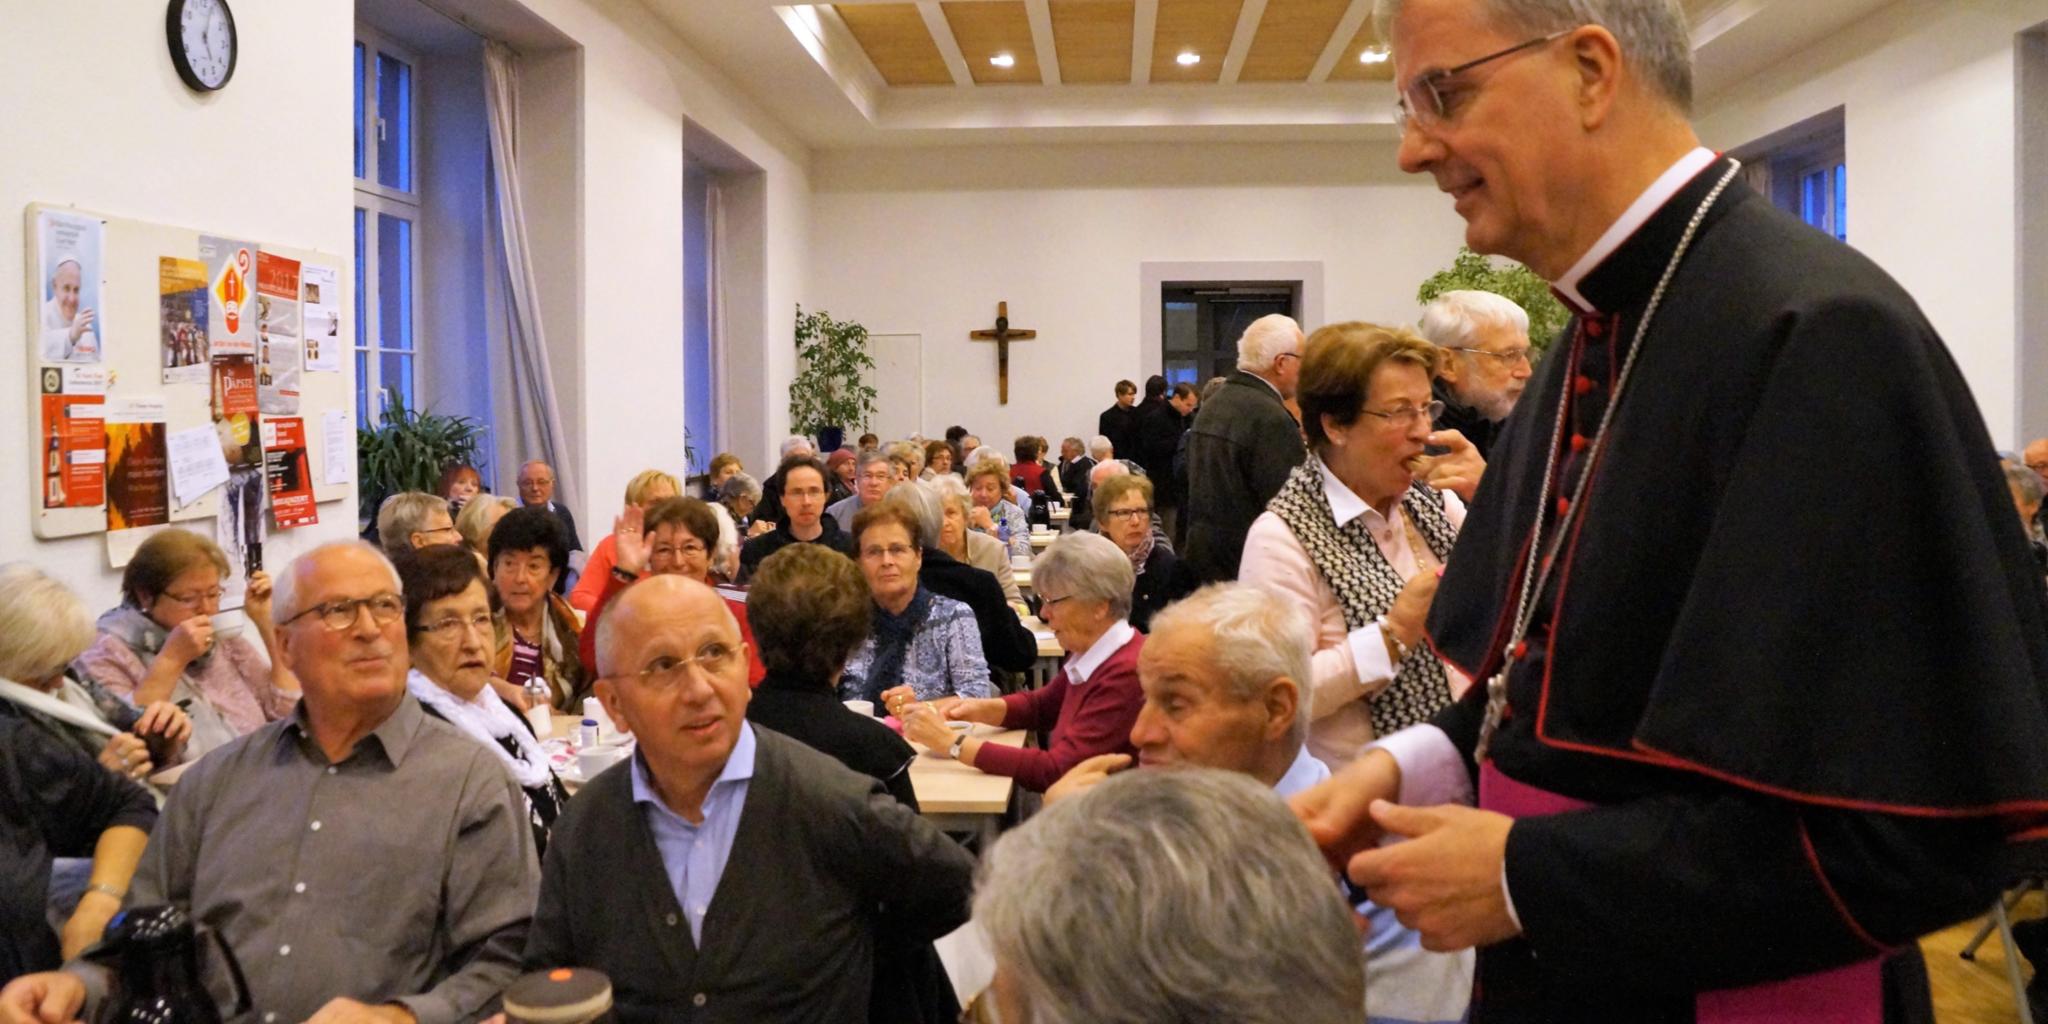 Austausch von Erinnerungen in gemütlicher Runde: Weihbischof Jörg Michael Peters im Gespräch mit Pilgern, die an den Bistums-Wallfahrten nach Lourdes und Fatima teilgenommen haben